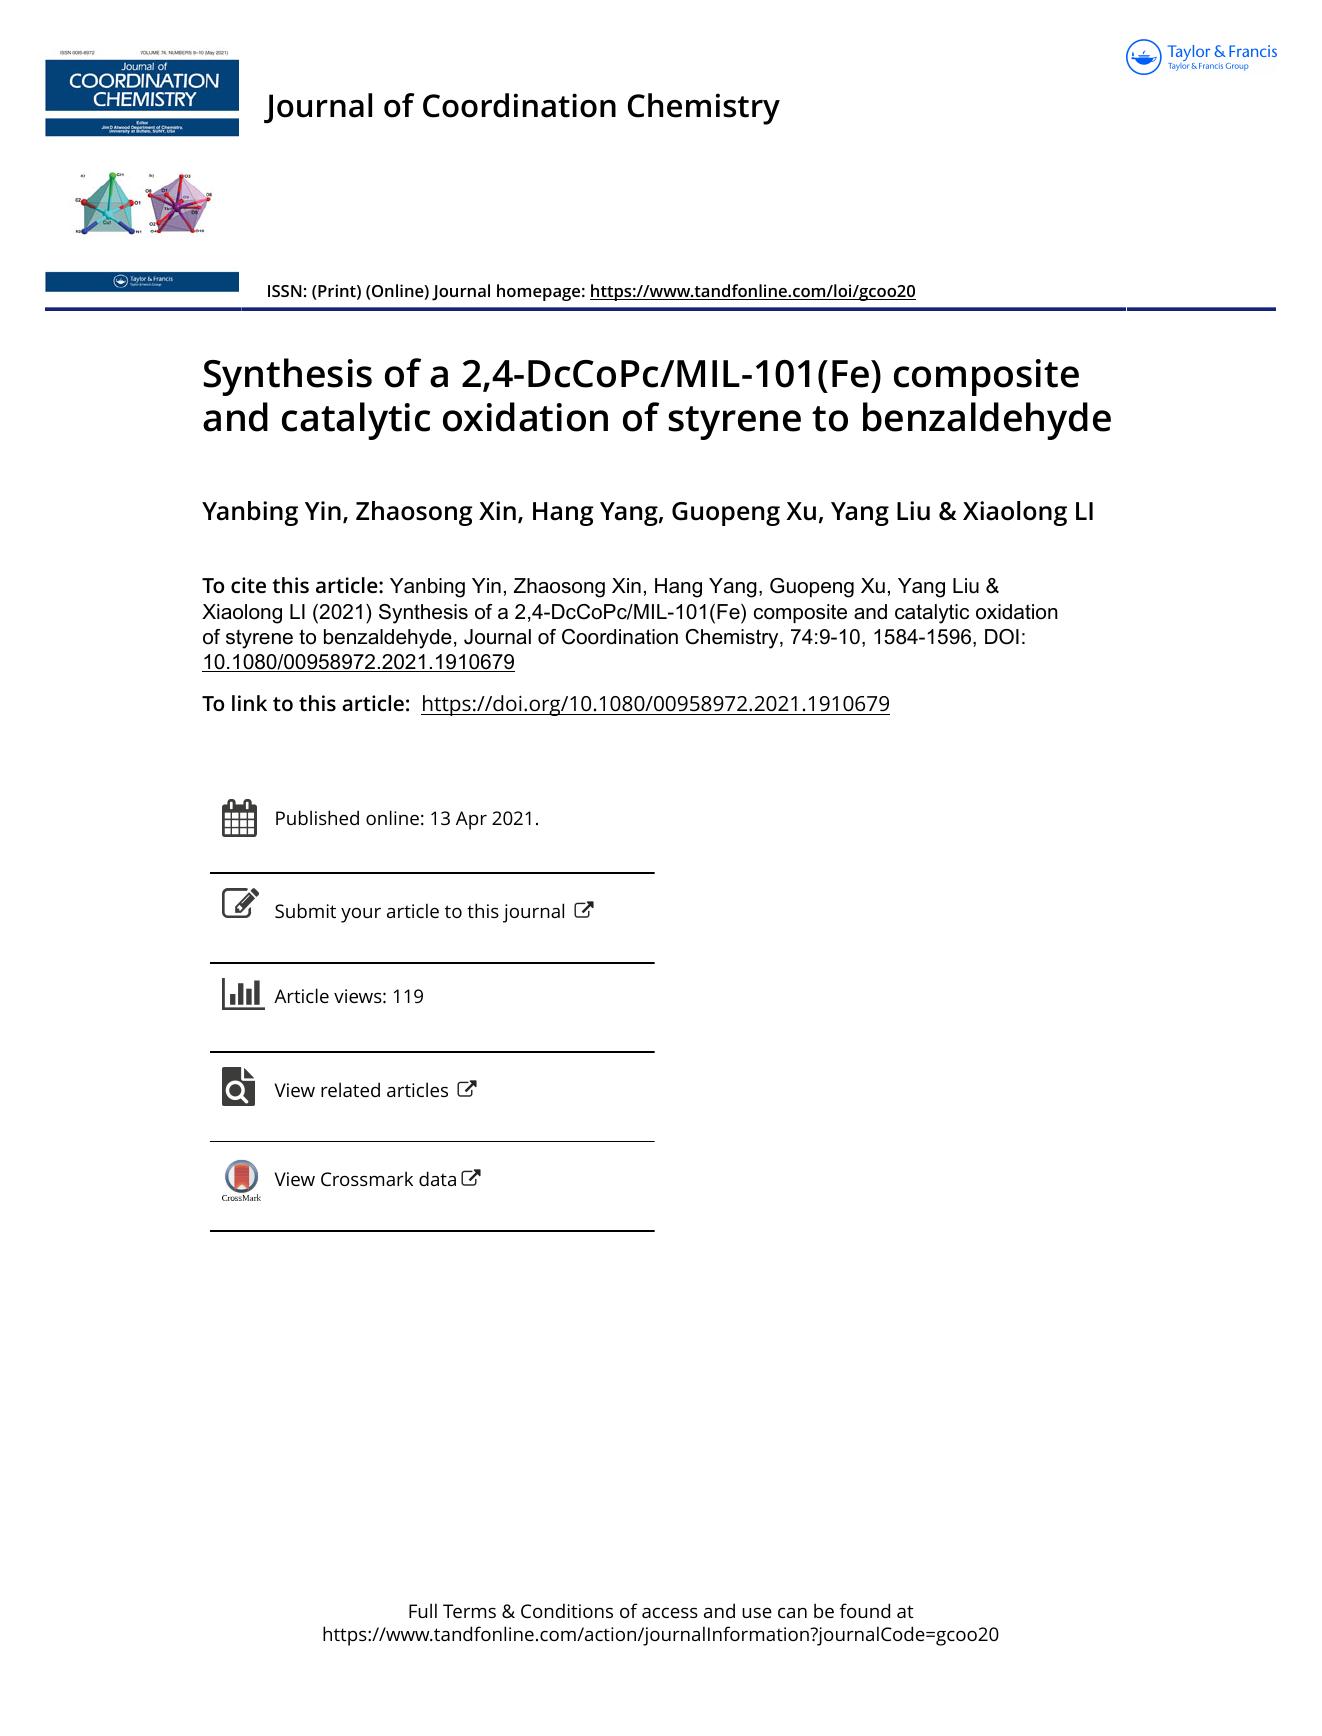 Synthesis of a 2,4-DcCoPcMIL-101(Fe) composite and catalytic oxidation of styrene to benzaldehyde by Yin Yanbing & Xin Zhaosong & Yang Hang & Xu Guopeng & Liu Yang & LI Xiaolong